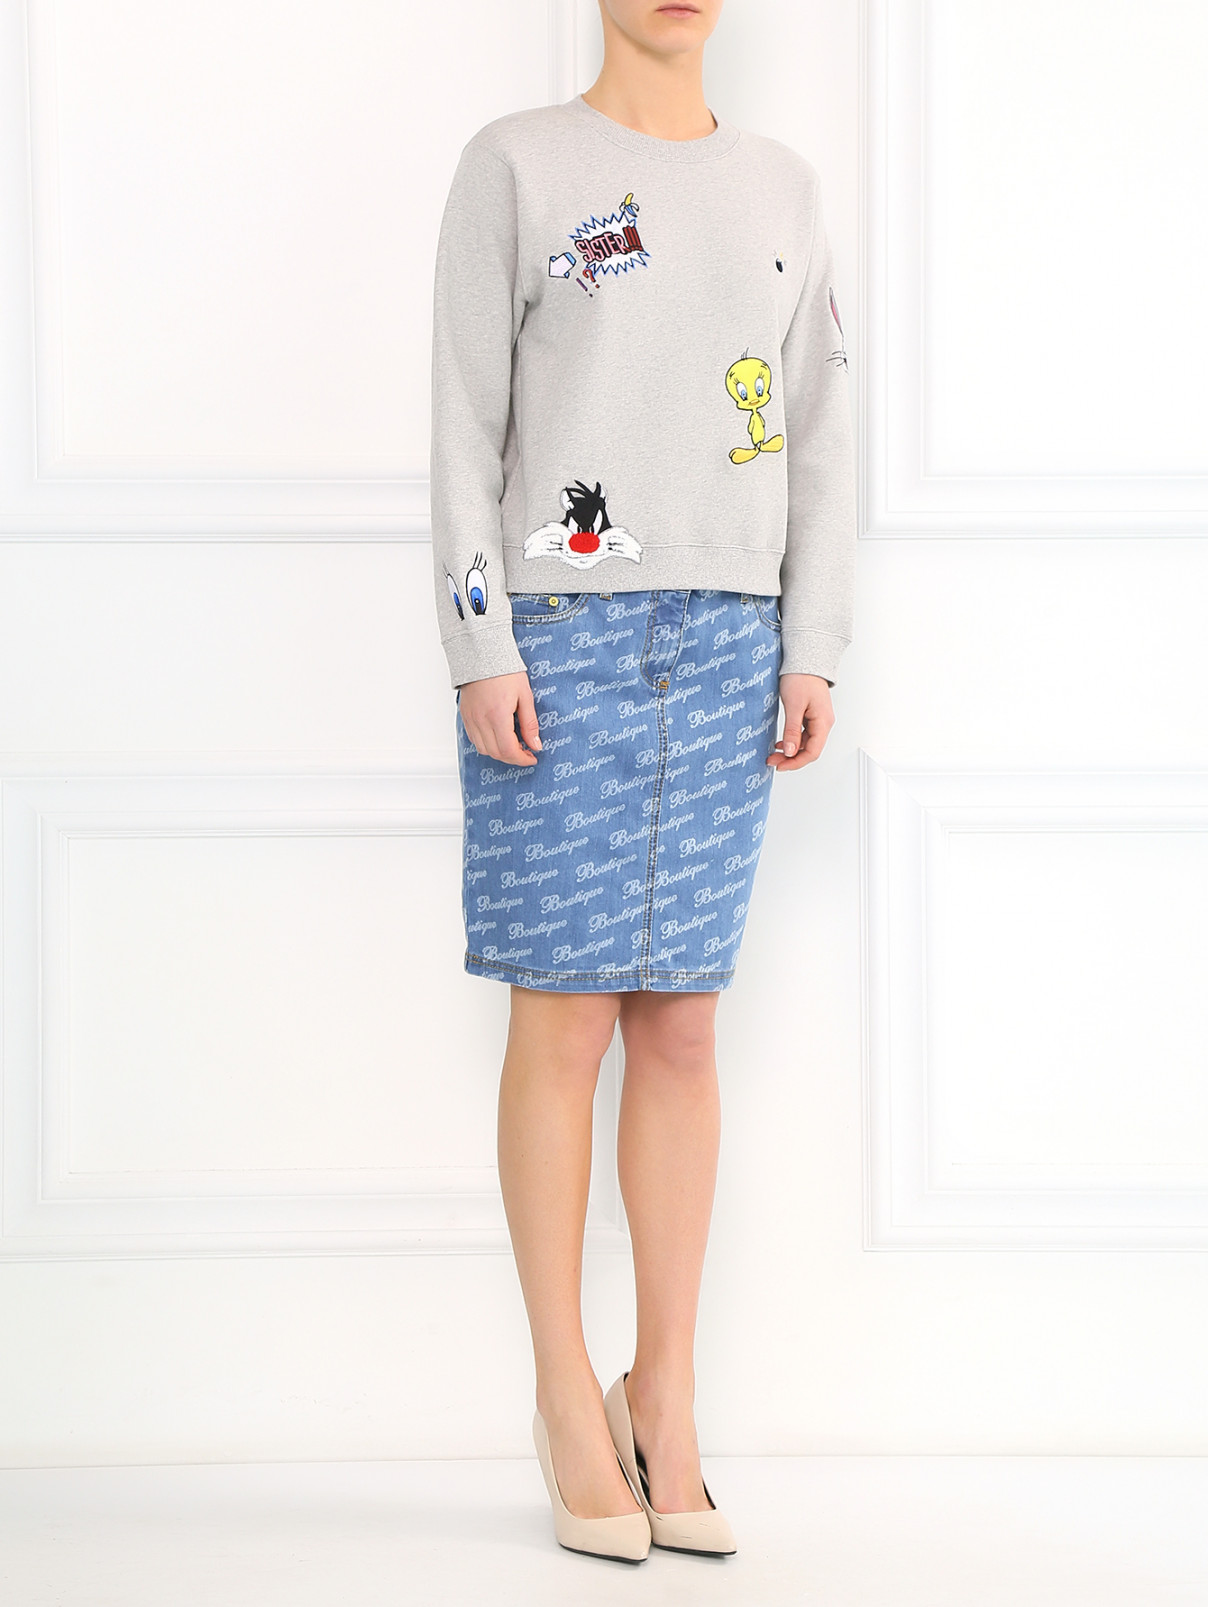 Джинсовая юбка-мини Moschino Boutique  –  Модель Общий вид  – Цвет:  Синий